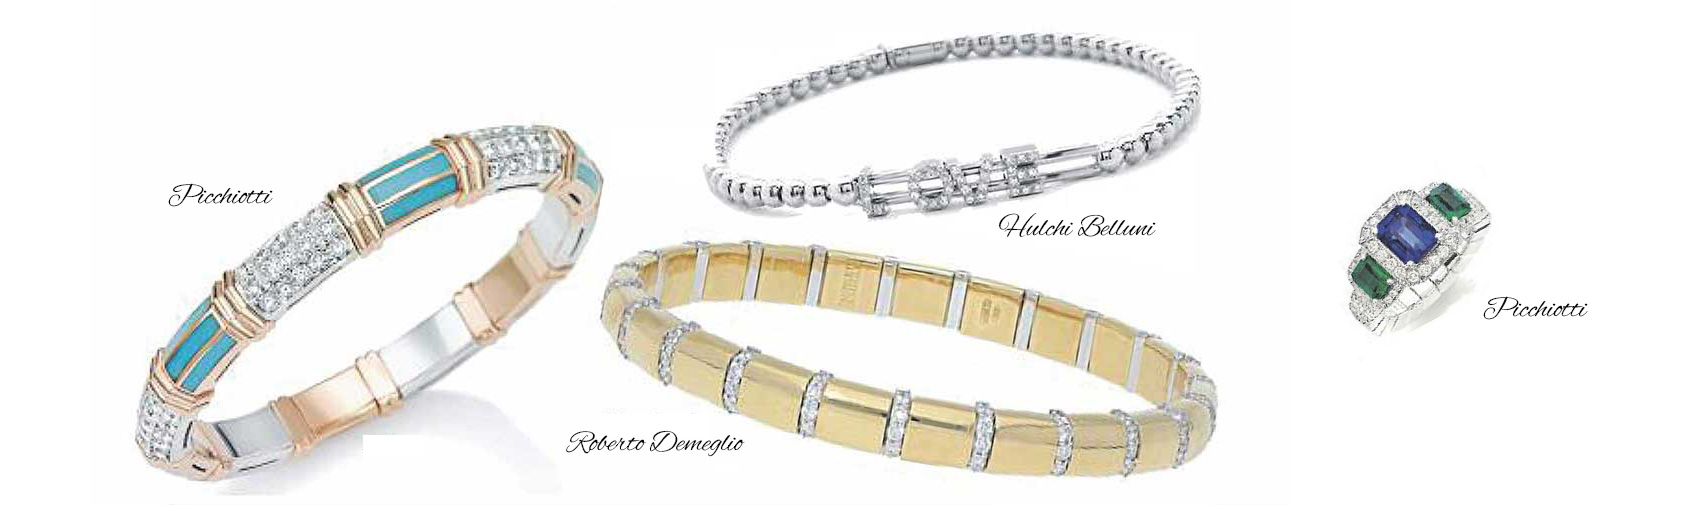 Picchiotti, Roberto Demeglio, and Hulchi Belluni luxury stretch bracelets